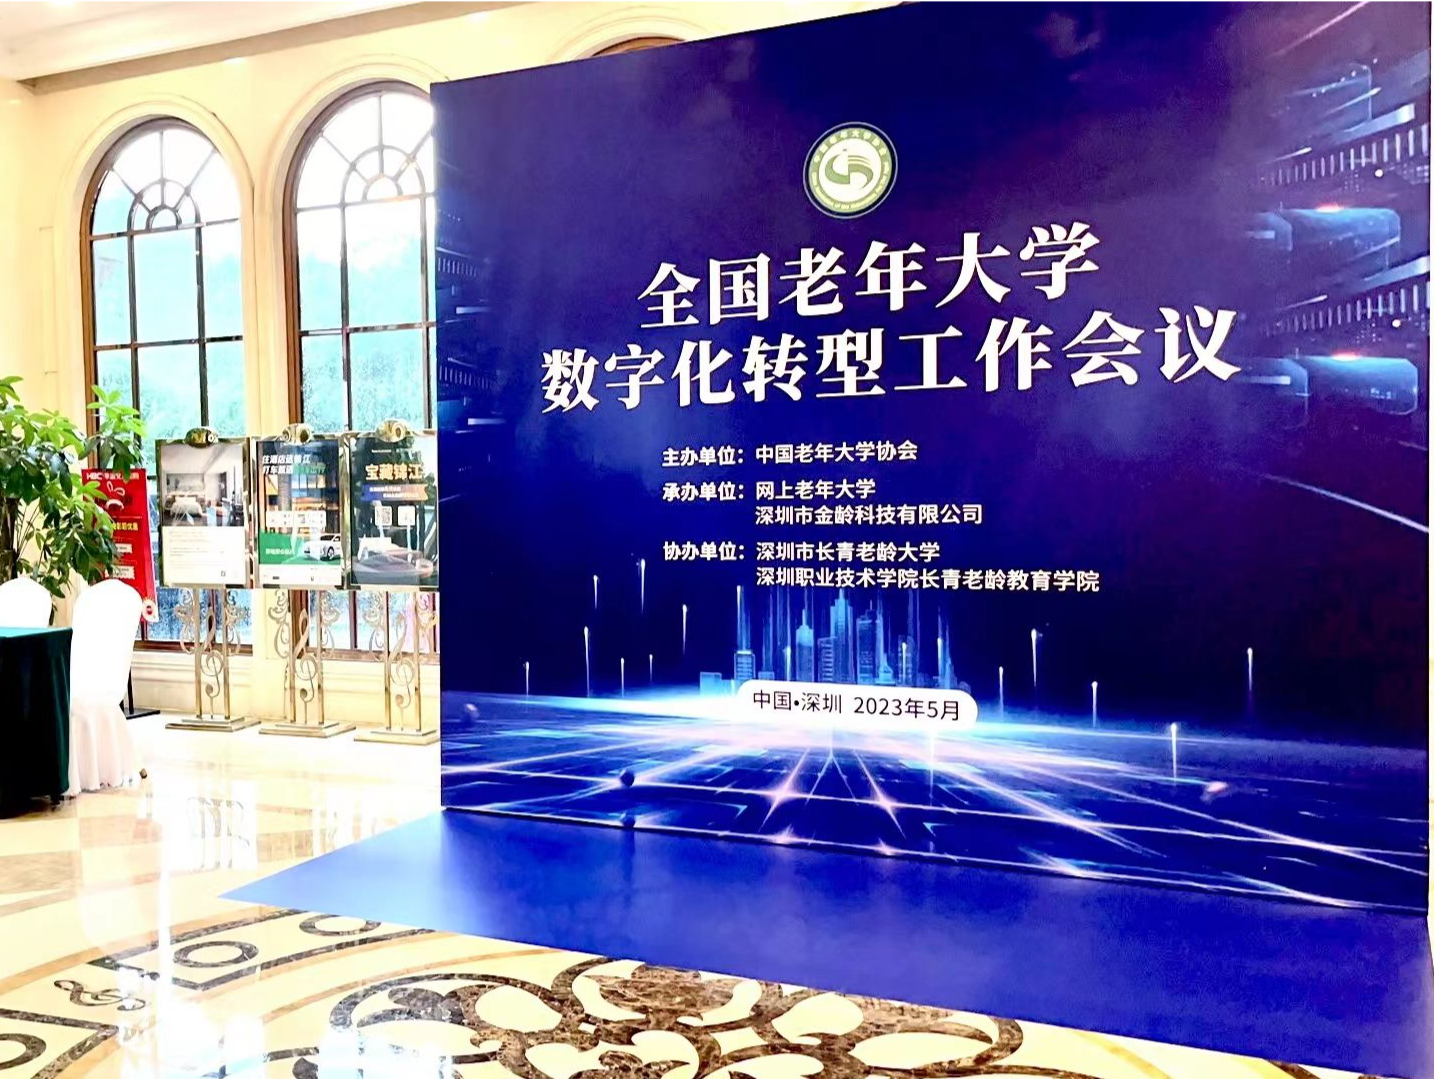 深圳老年教育数字化转型迎风口  构筑一流智慧长青老龄大学集群